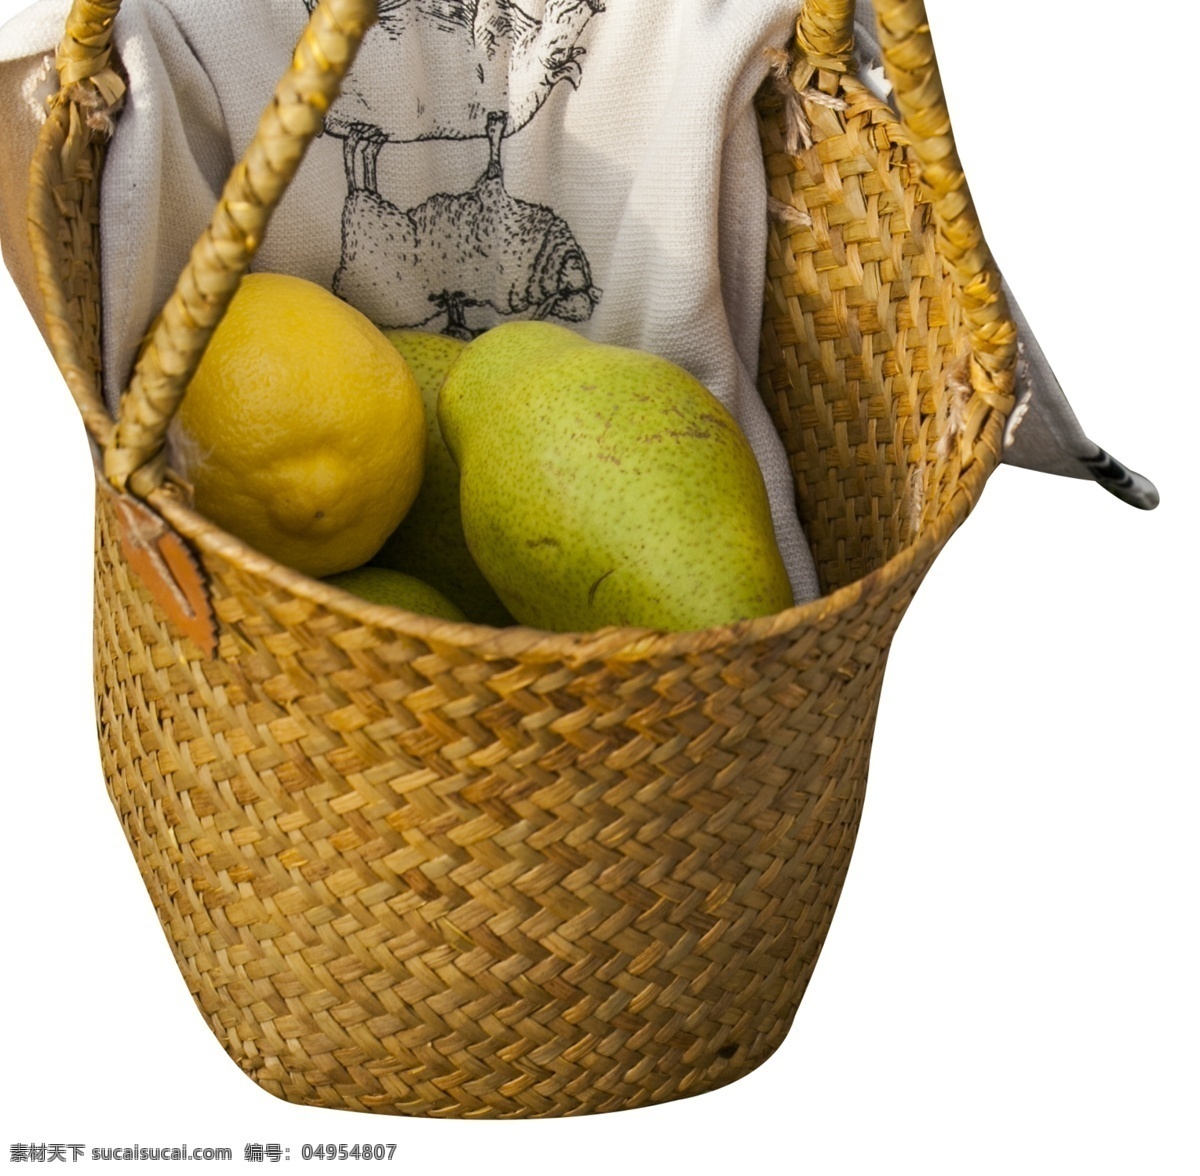 竹编 竹 质 水果篮子 赠礼水果 果篮 水果 礼物 水果篮 木质 美味 梨 柠檬 编织篓子 储物篮 农家